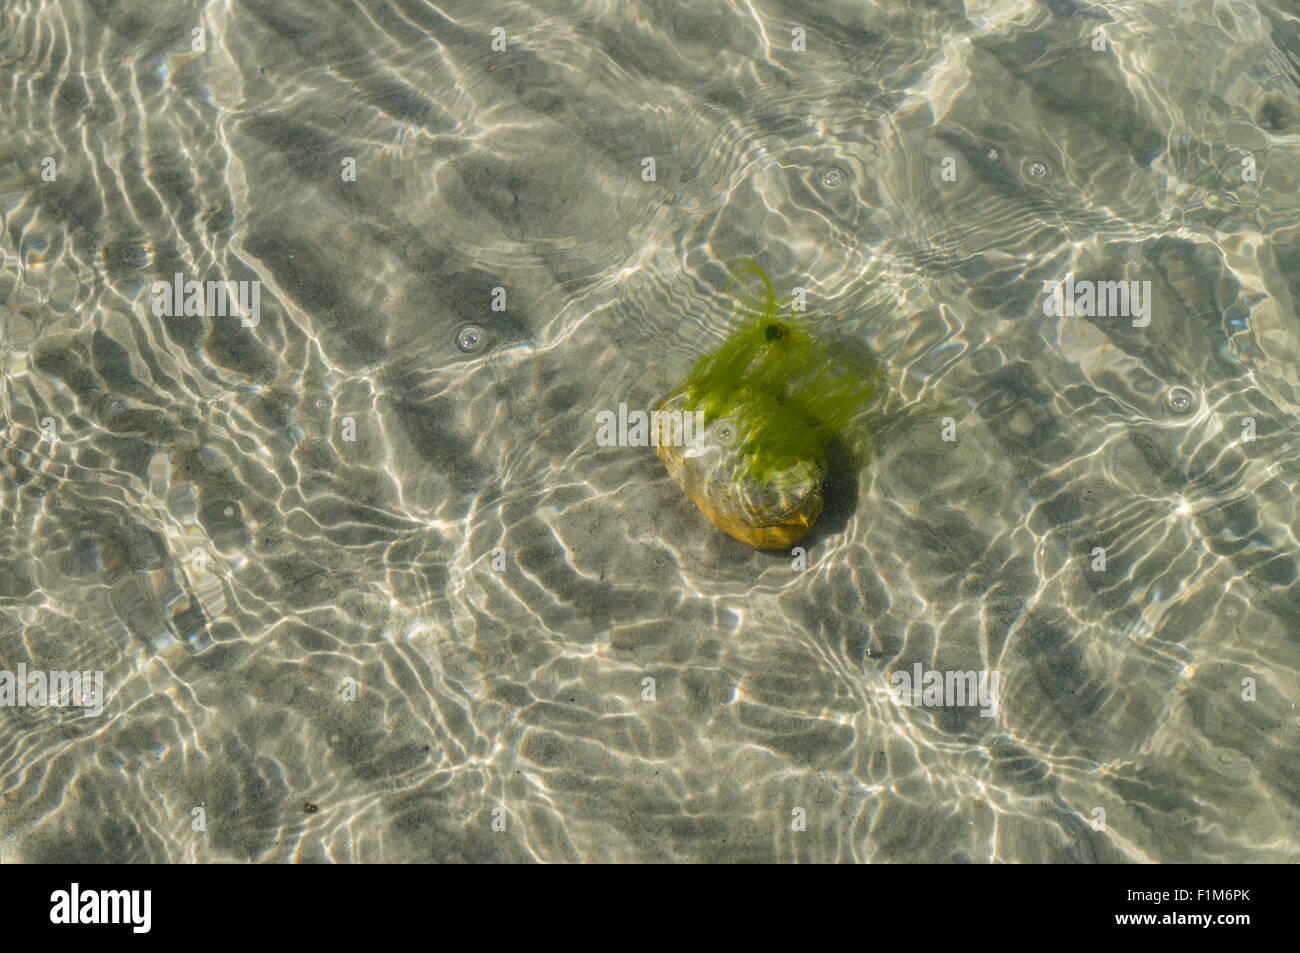 Stein mit Algen auf dem sandigen Boden des Meeres, Blick durch transparentes Wasser Stockfoto